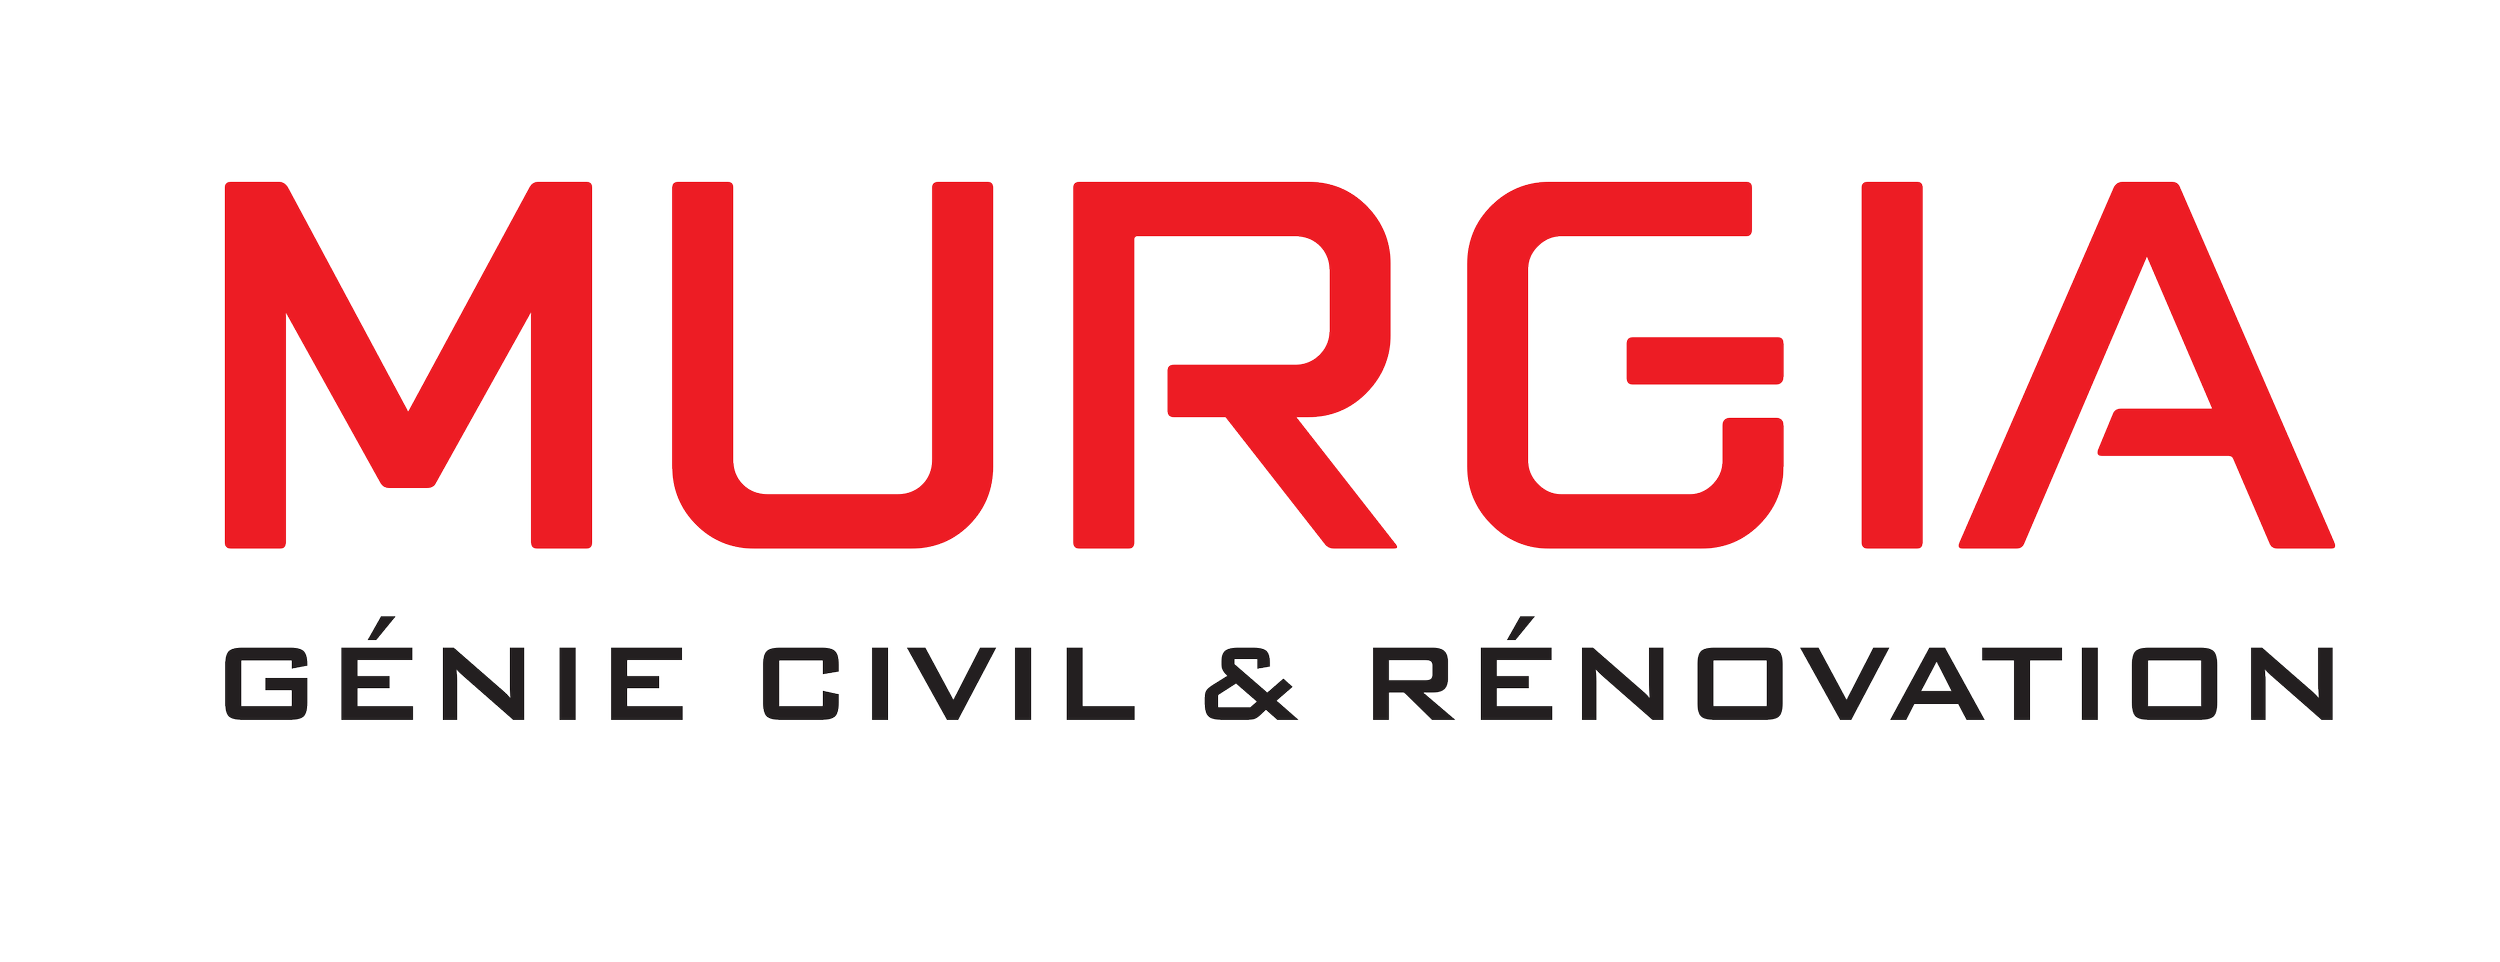 Murgia_logo